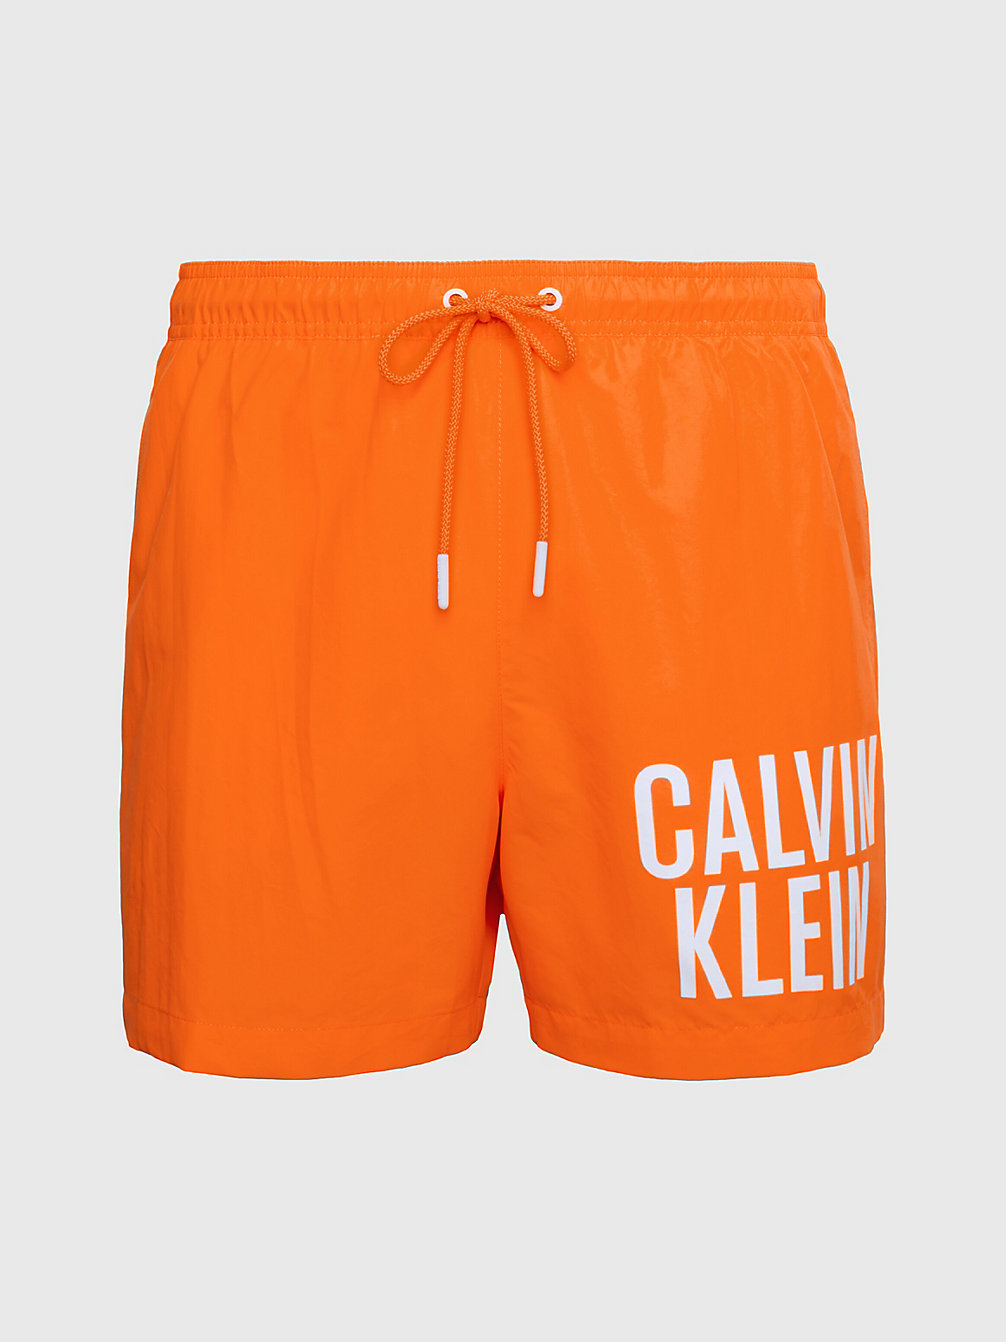 SUN KISSED ORANGE > Medium Zwemshort Met Trekkoord - Intense Power > undefined heren - Calvin Klein